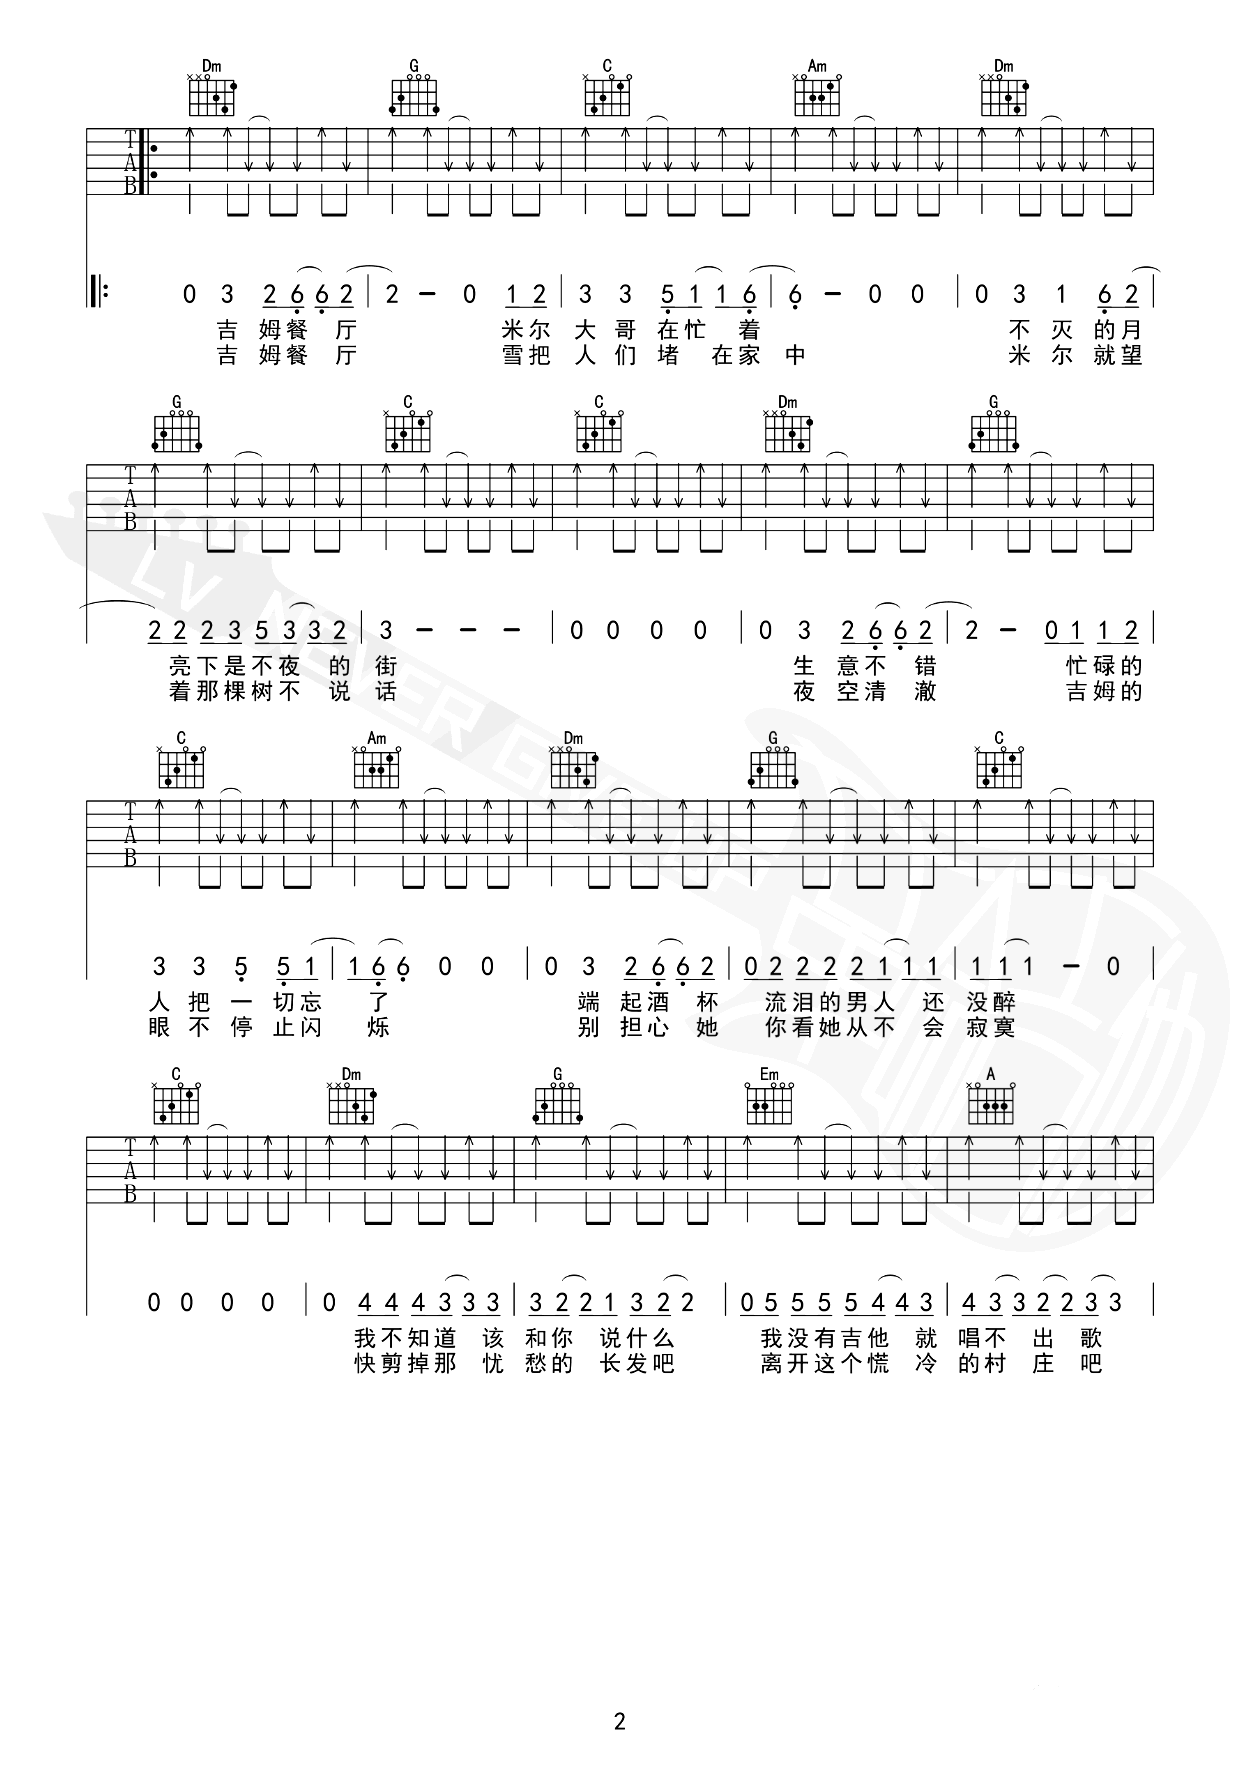 吉姆餐厅吉他谱-赵雷-C调-曲谱网-2